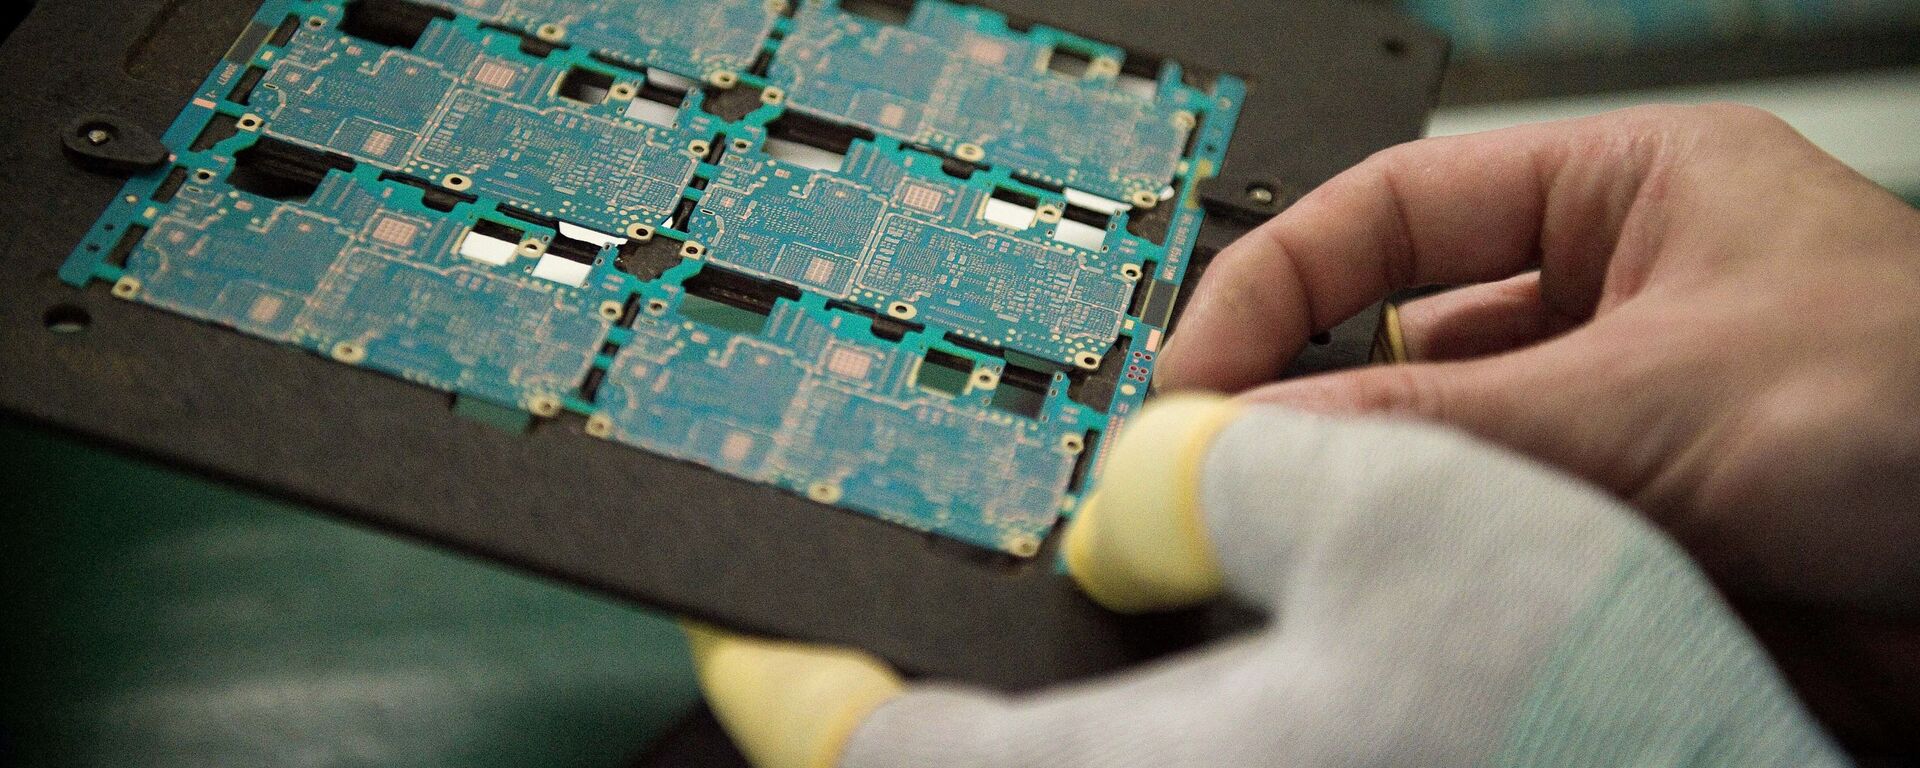 Sơ đồ các thành phần trong chip điện thoại thông minh được công nhân xử lý tại nhà máy Oppo ở Đông Quan, Trung Quốc. - Sputnik Việt Nam, 1920, 24.01.2022